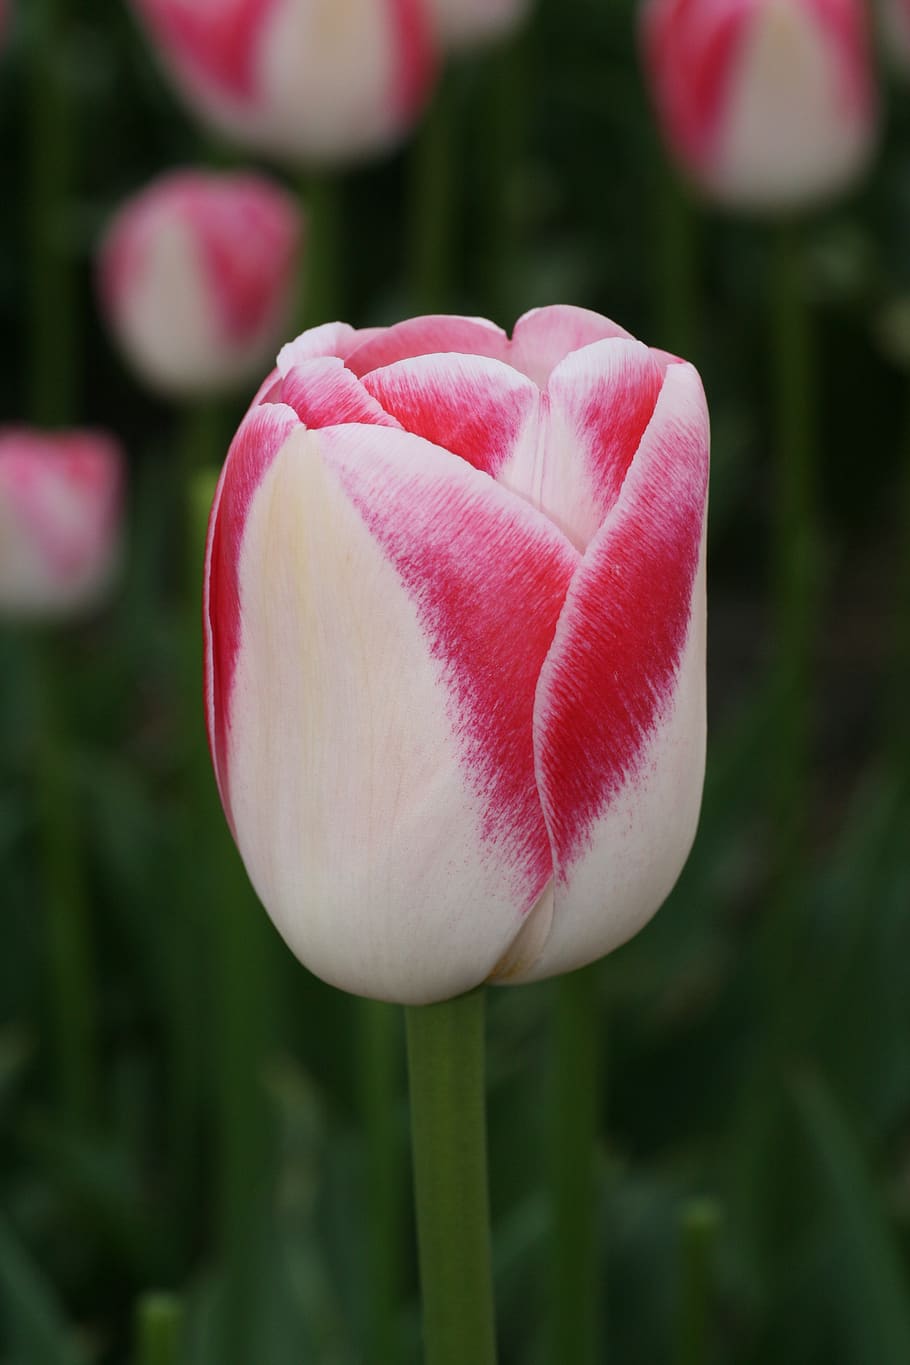 tulipán, rojo, blanco, primavera, flor cortada, tulipanes, flores, jardín, flor de primavera, colorido